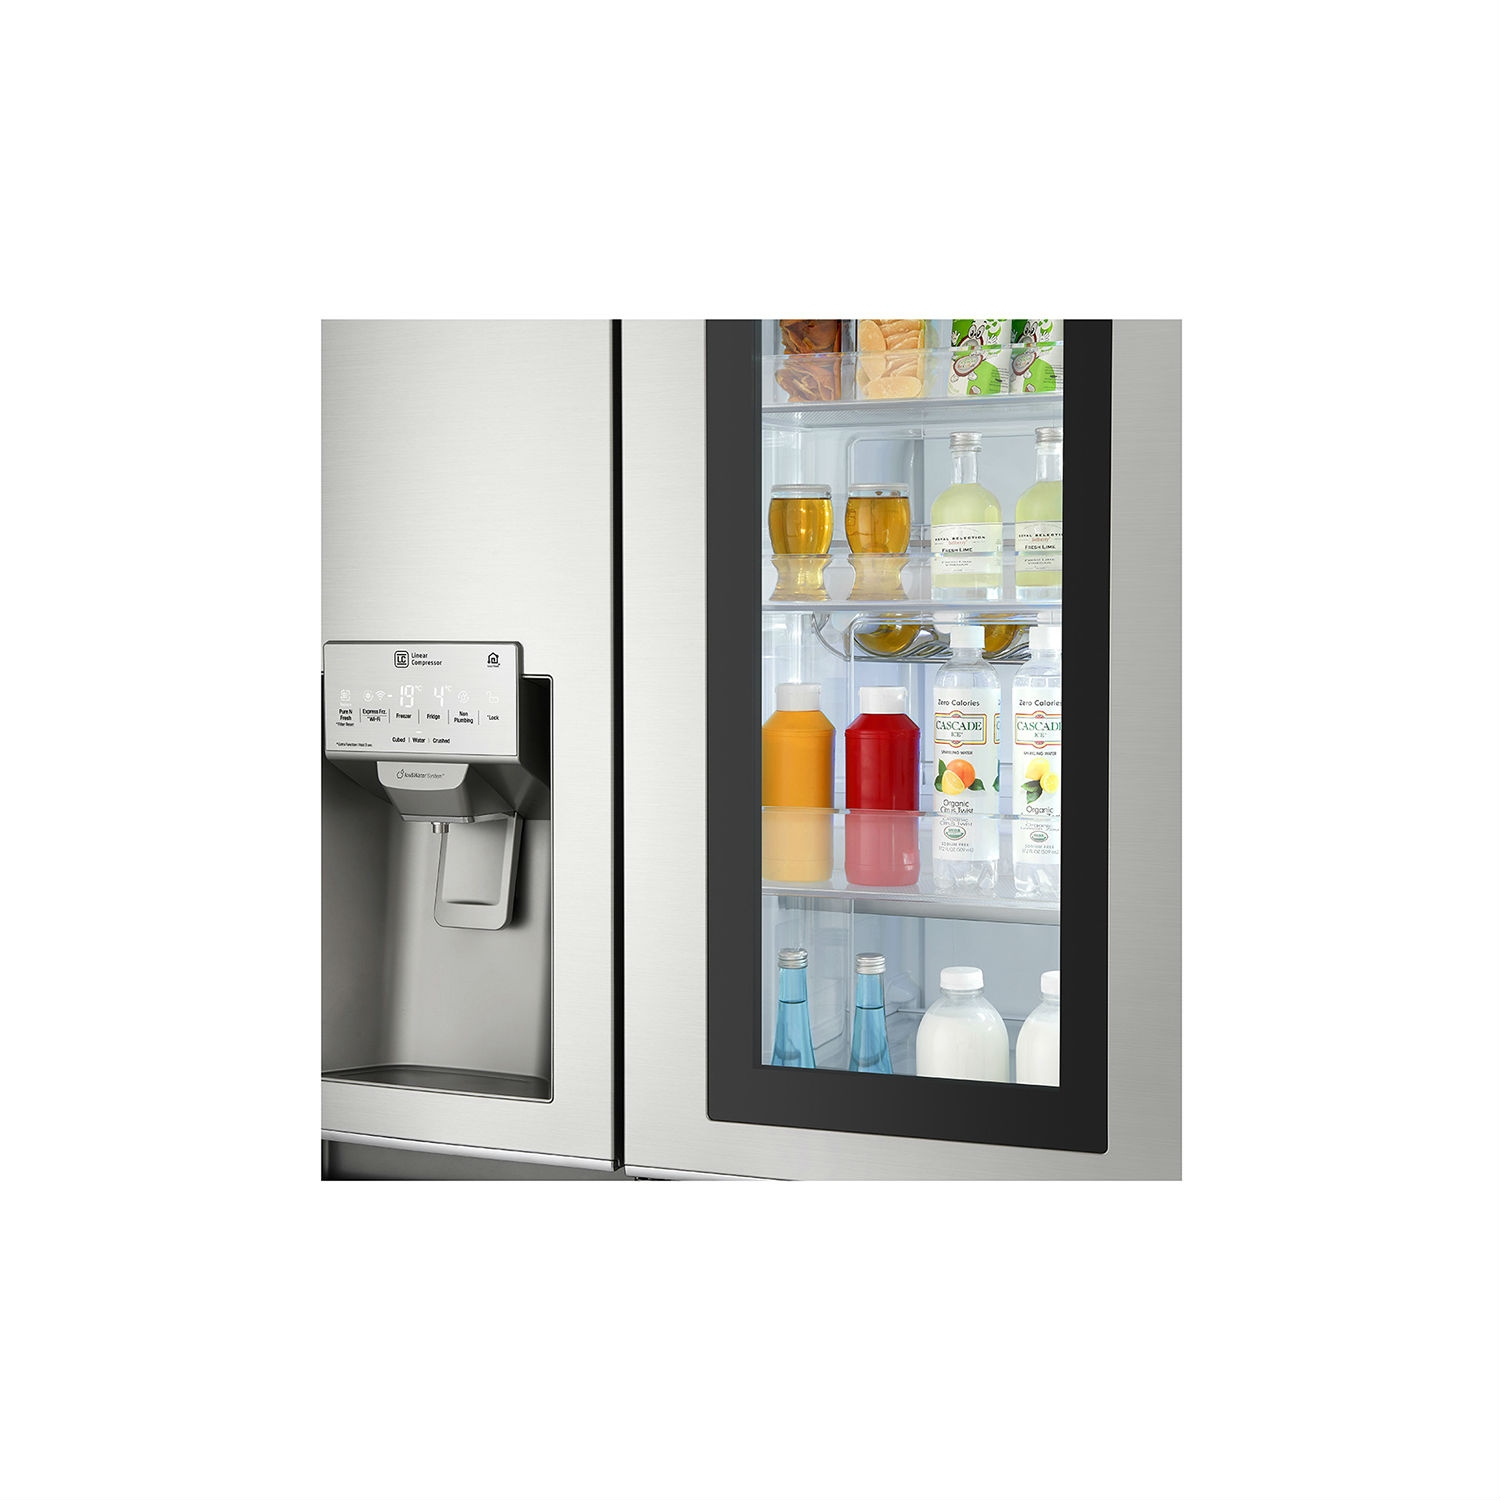 LG ELECTRONICS InstaView Door-in-Door American Style Fridge Freezer - PREMIUM STEEL - A++ Energy Rated - 2